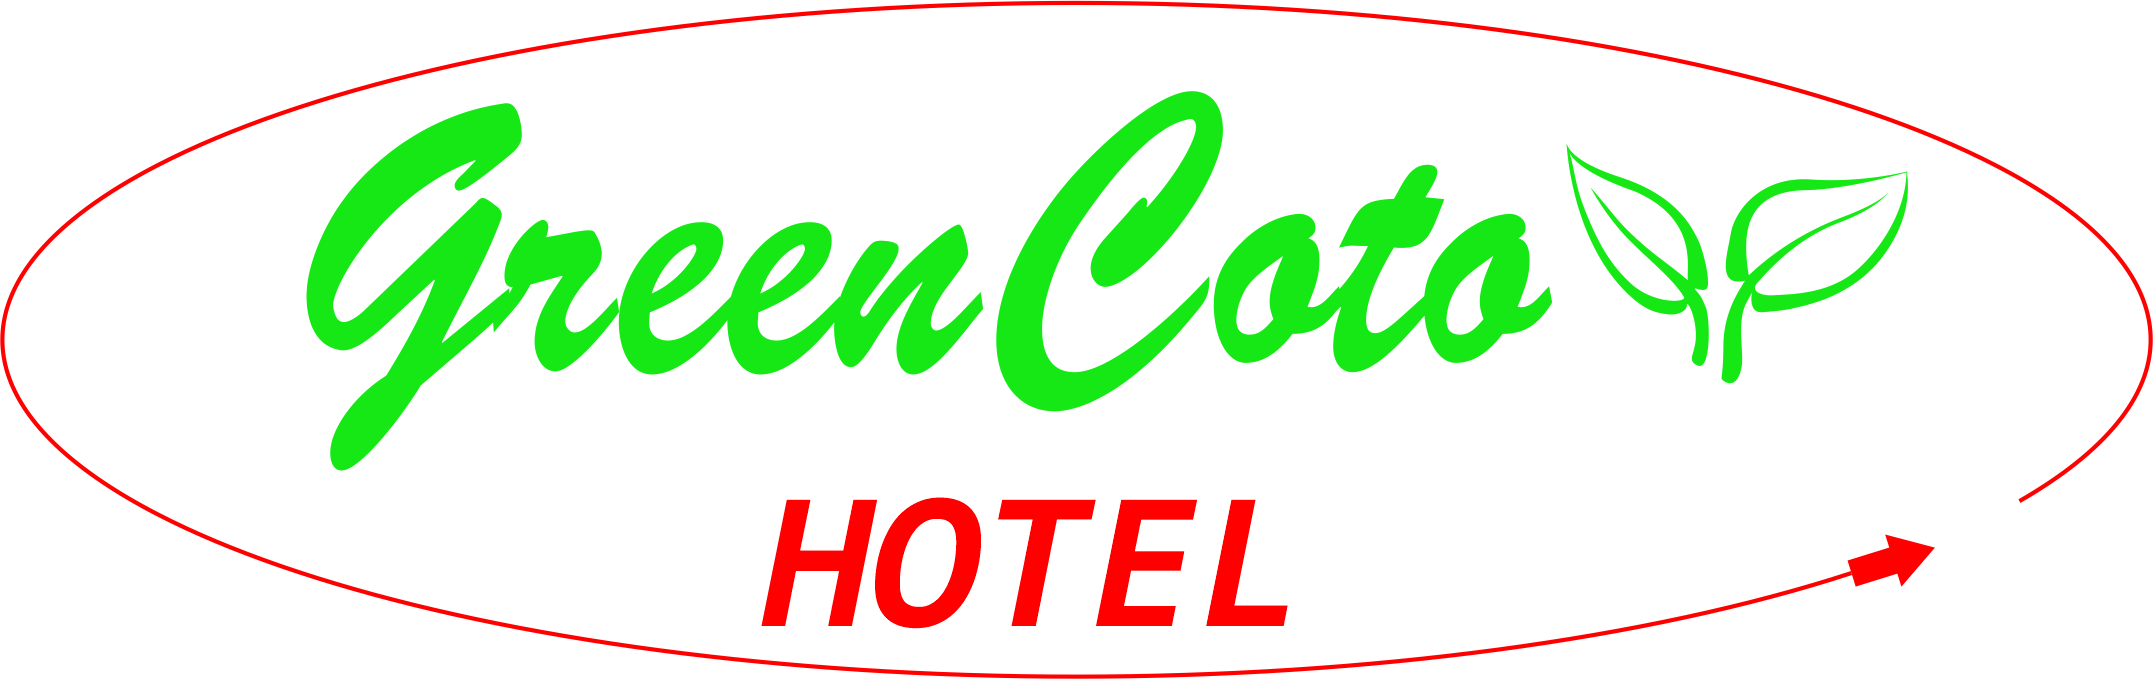 Green Coto Hotel